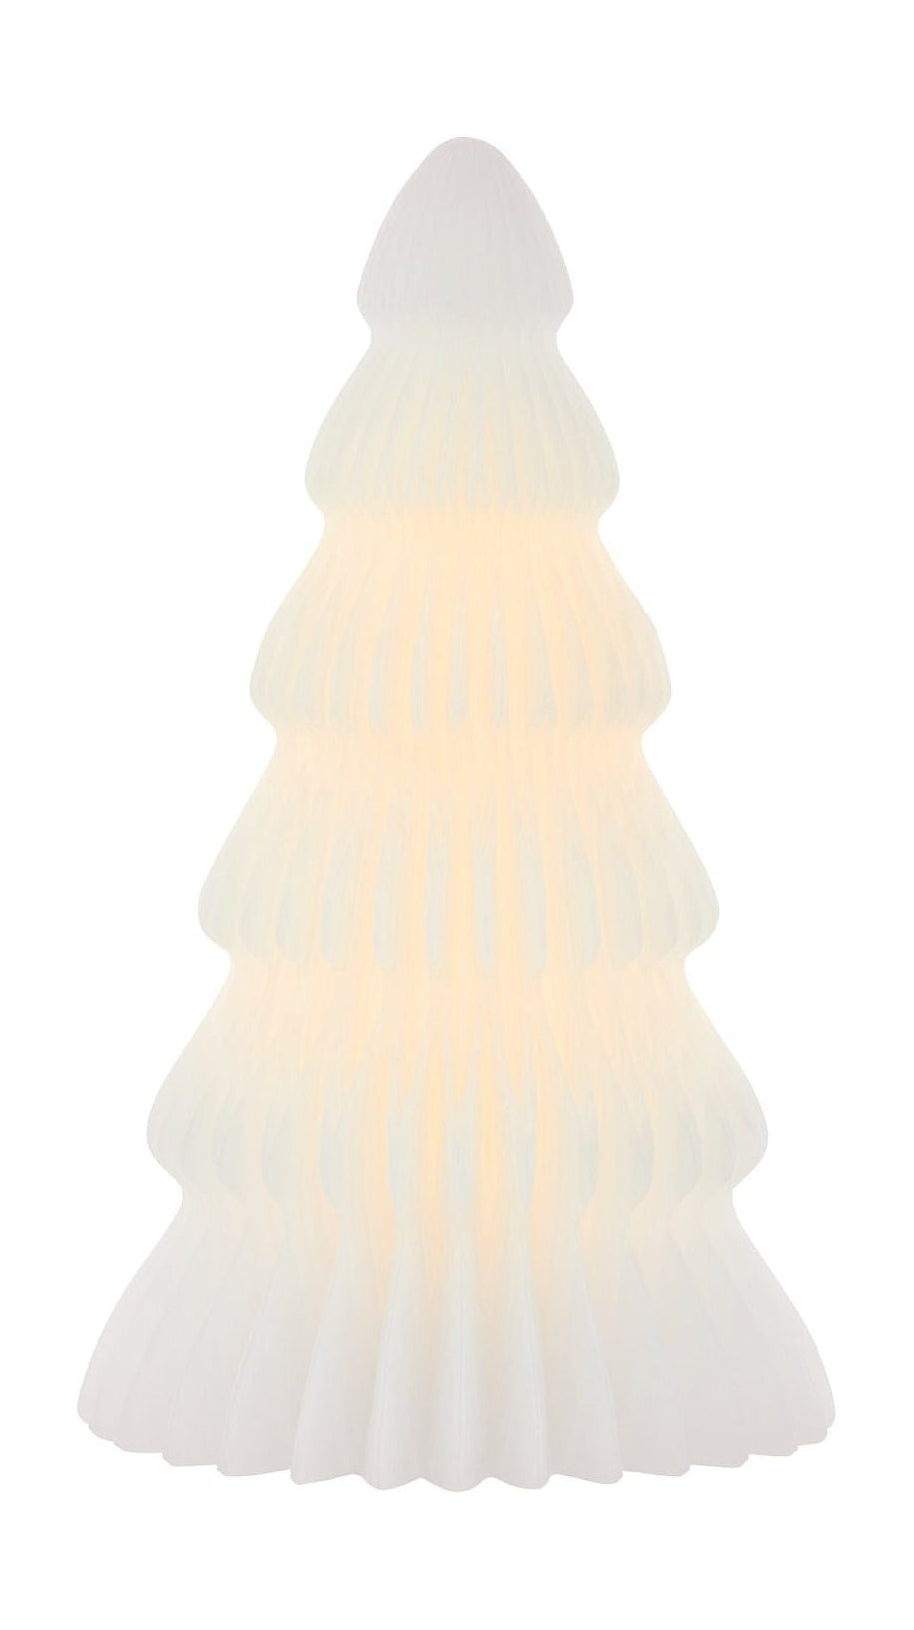 SIRIUS CLAIRE LED TELET DE CHROIS BLANC, øx H 11x19 cm